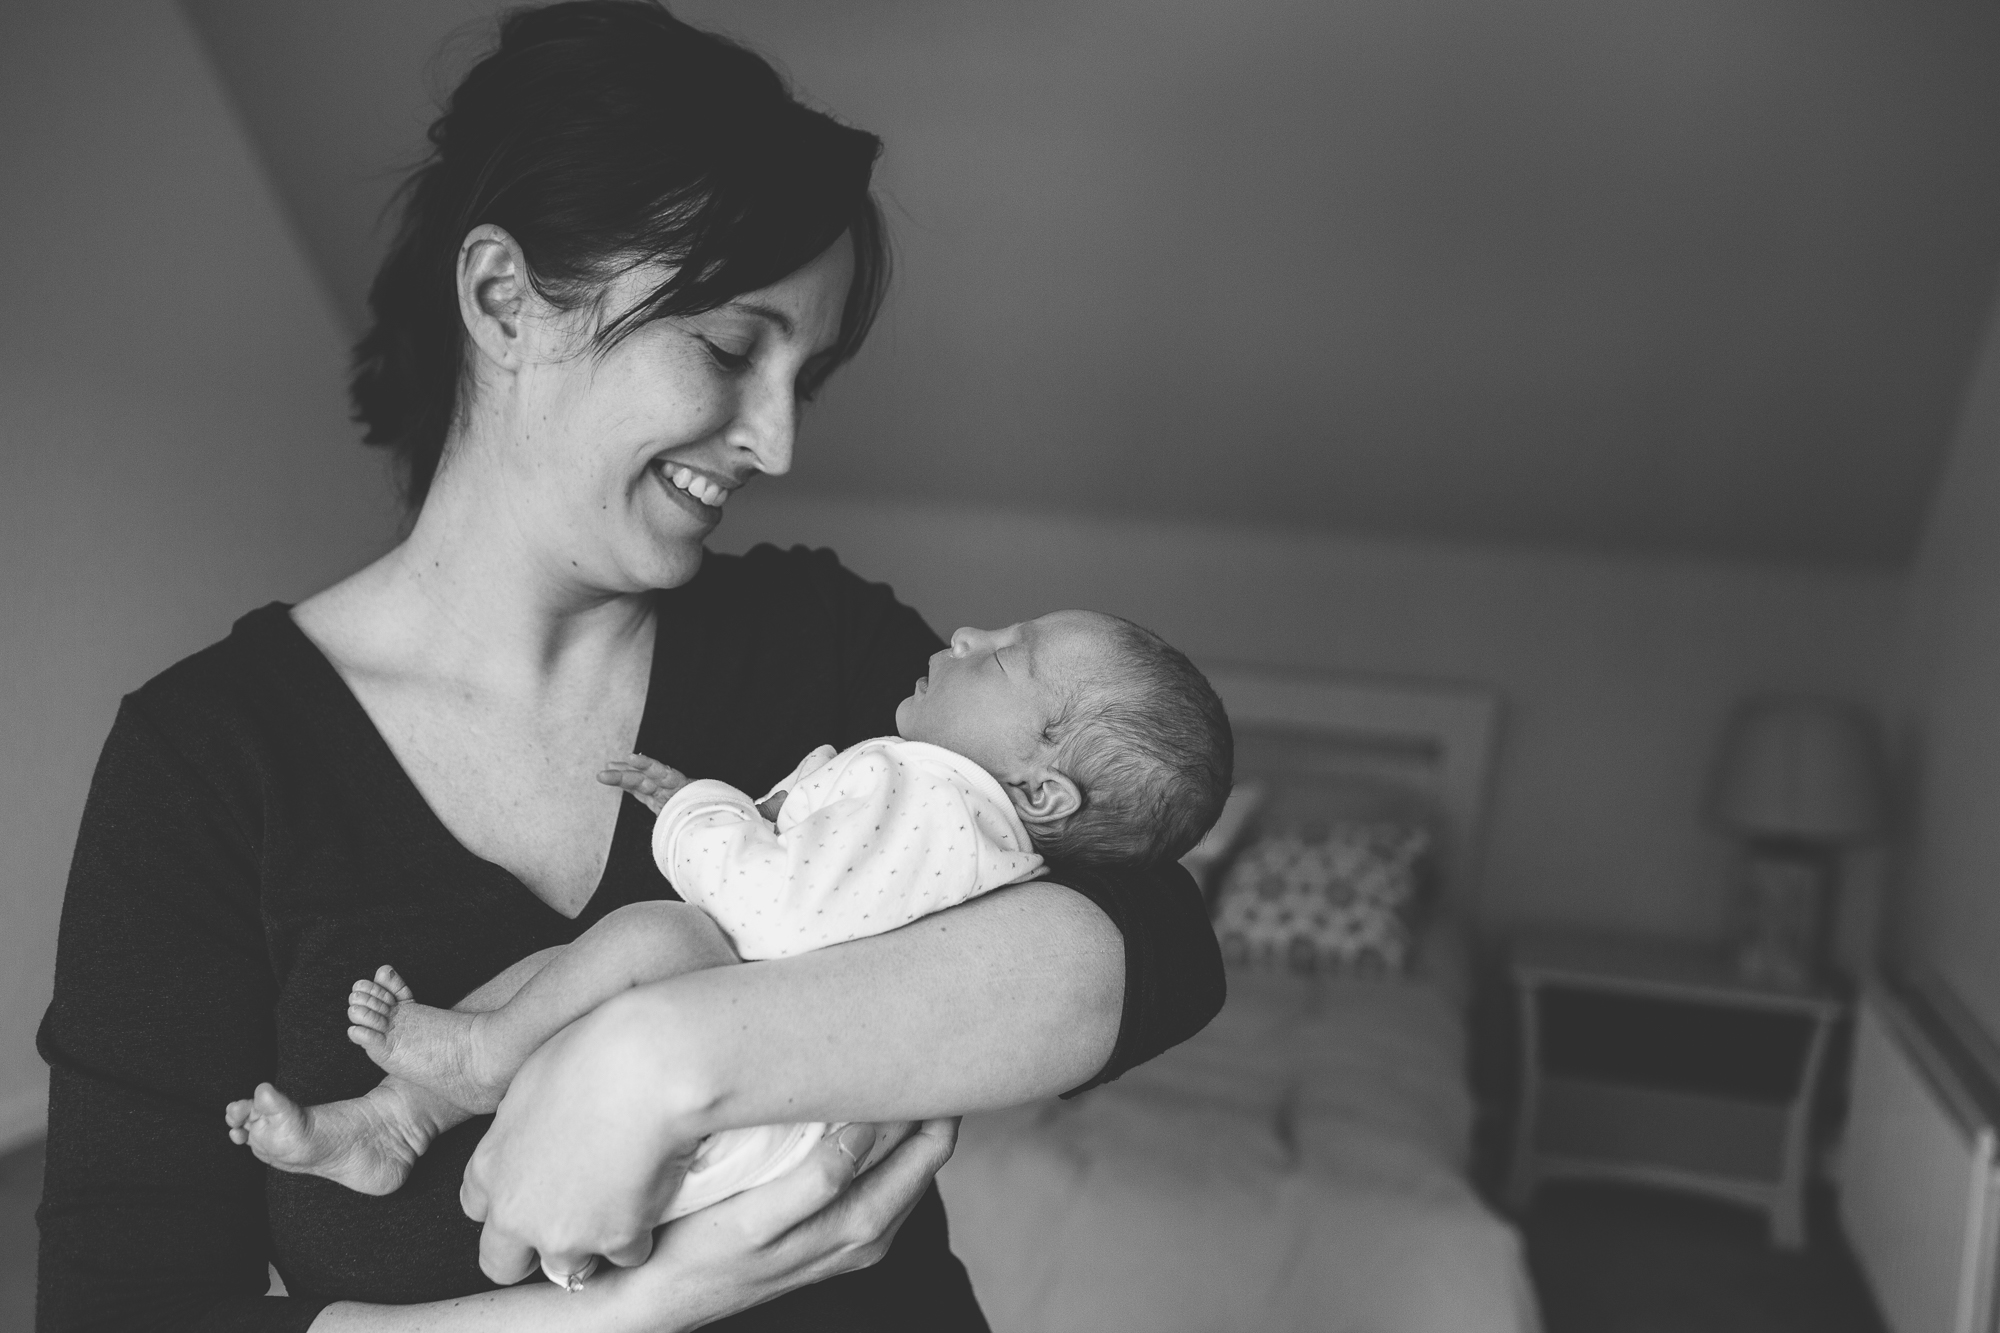 Aberdeen baby photographer, newborn photographer Aberdeen